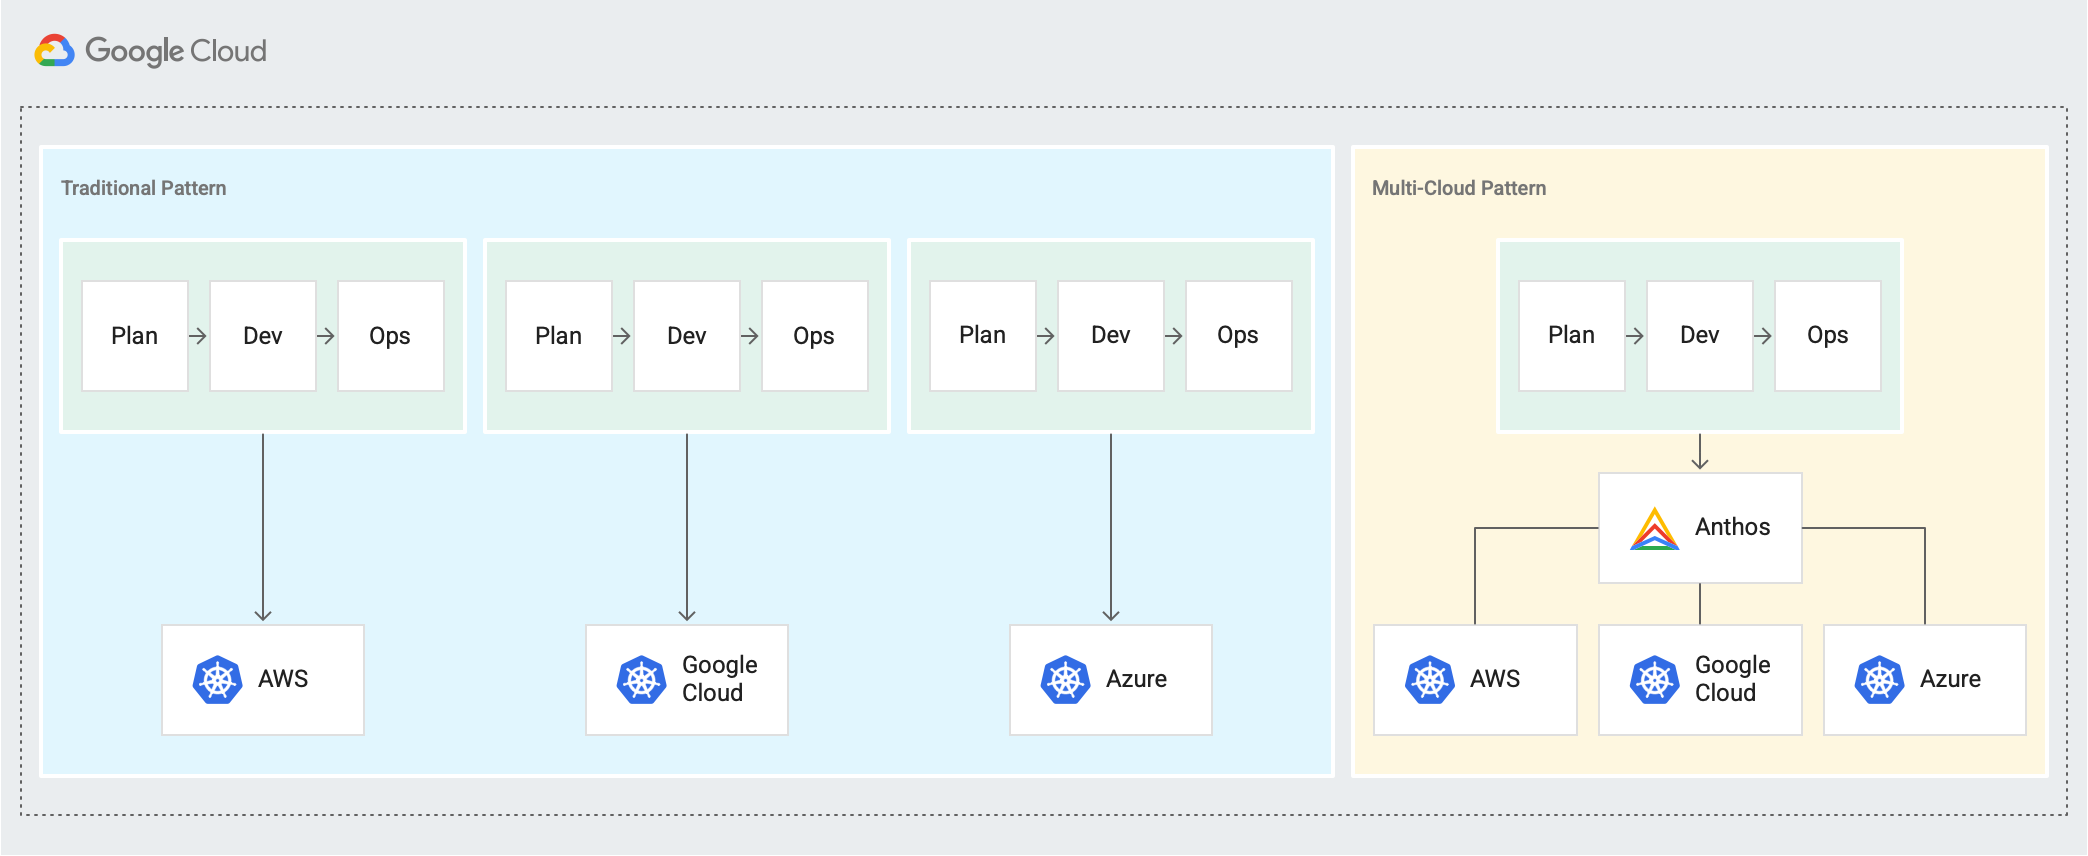 Se muestra un patrón tradicional de planificación independiente → Desarrollo → Operar ciclos para AWS, Google Cloud y Azure, y un nuevo patrón de múltiples nubes en el que los ciclos Planificar → Desarrollar → Operar se conectan a través de Anthos.